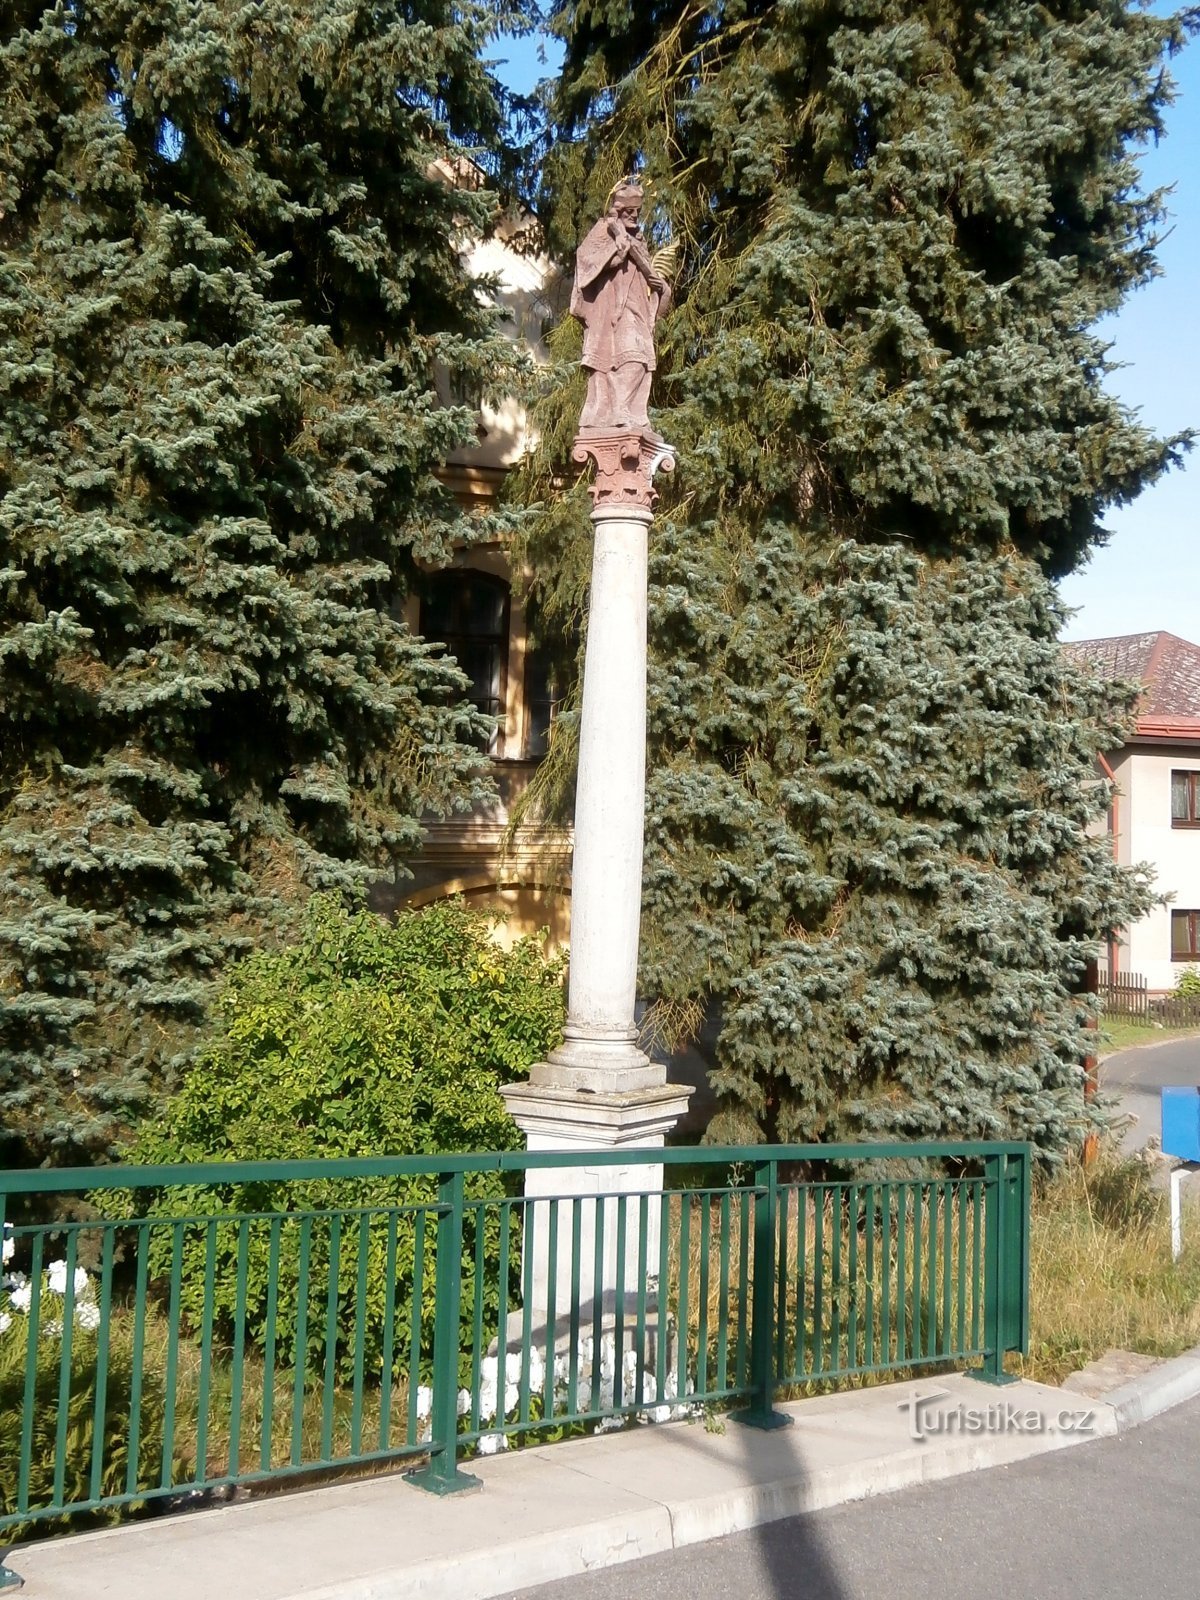 圣雕像Nepomuck 的约翰在 Mandle (Havlovice) 附近的桥栏杆后面